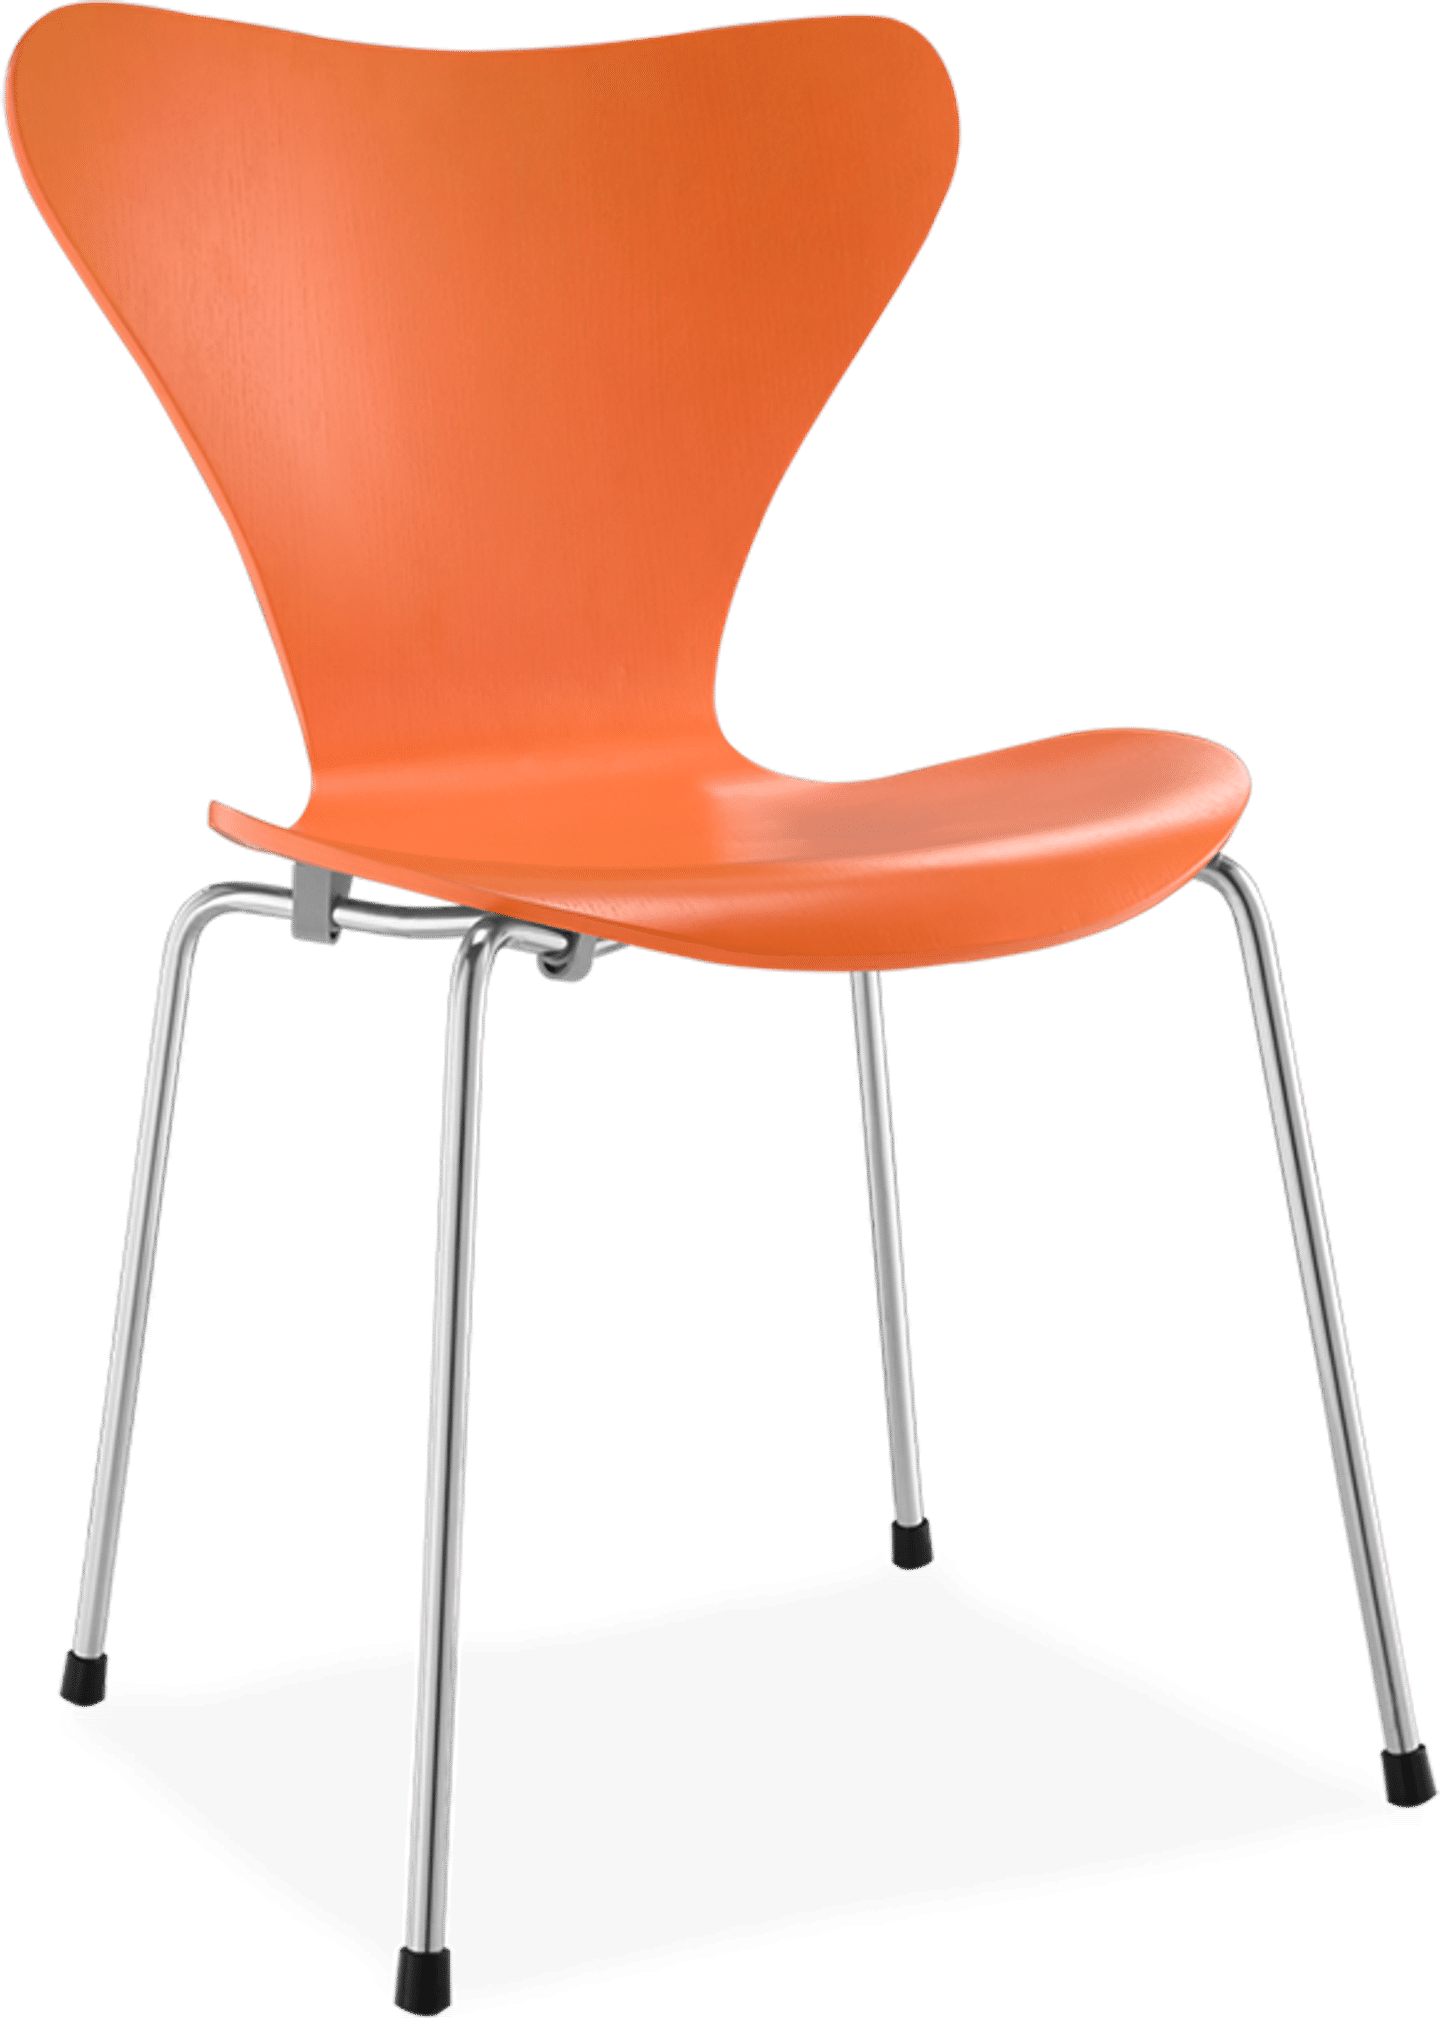 Chaise de la série 7 Plywood/Orange image.